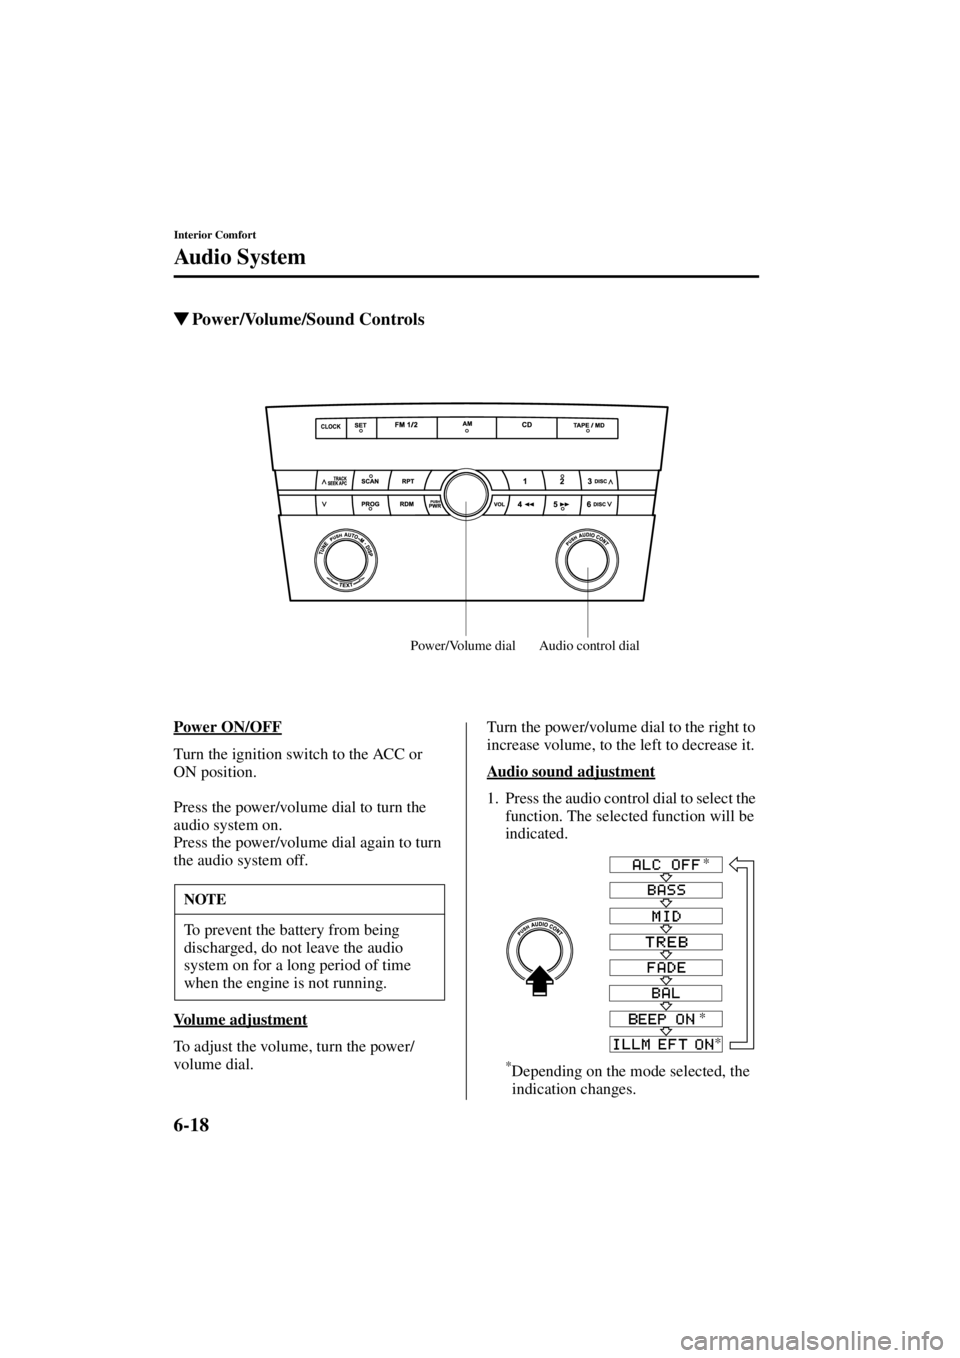 MAZDA MODEL 3 5-DOOR 2004  Owners Manual 6-18
Interior Comfort
Au di o S ys t em
Form No. 8S18-EA-03I
Power/Volume/Sound Controls
Power ON/OFF
Turn the ignition switch to the ACC or 
ON position.
Press the power/volume dial to turn the 
aud